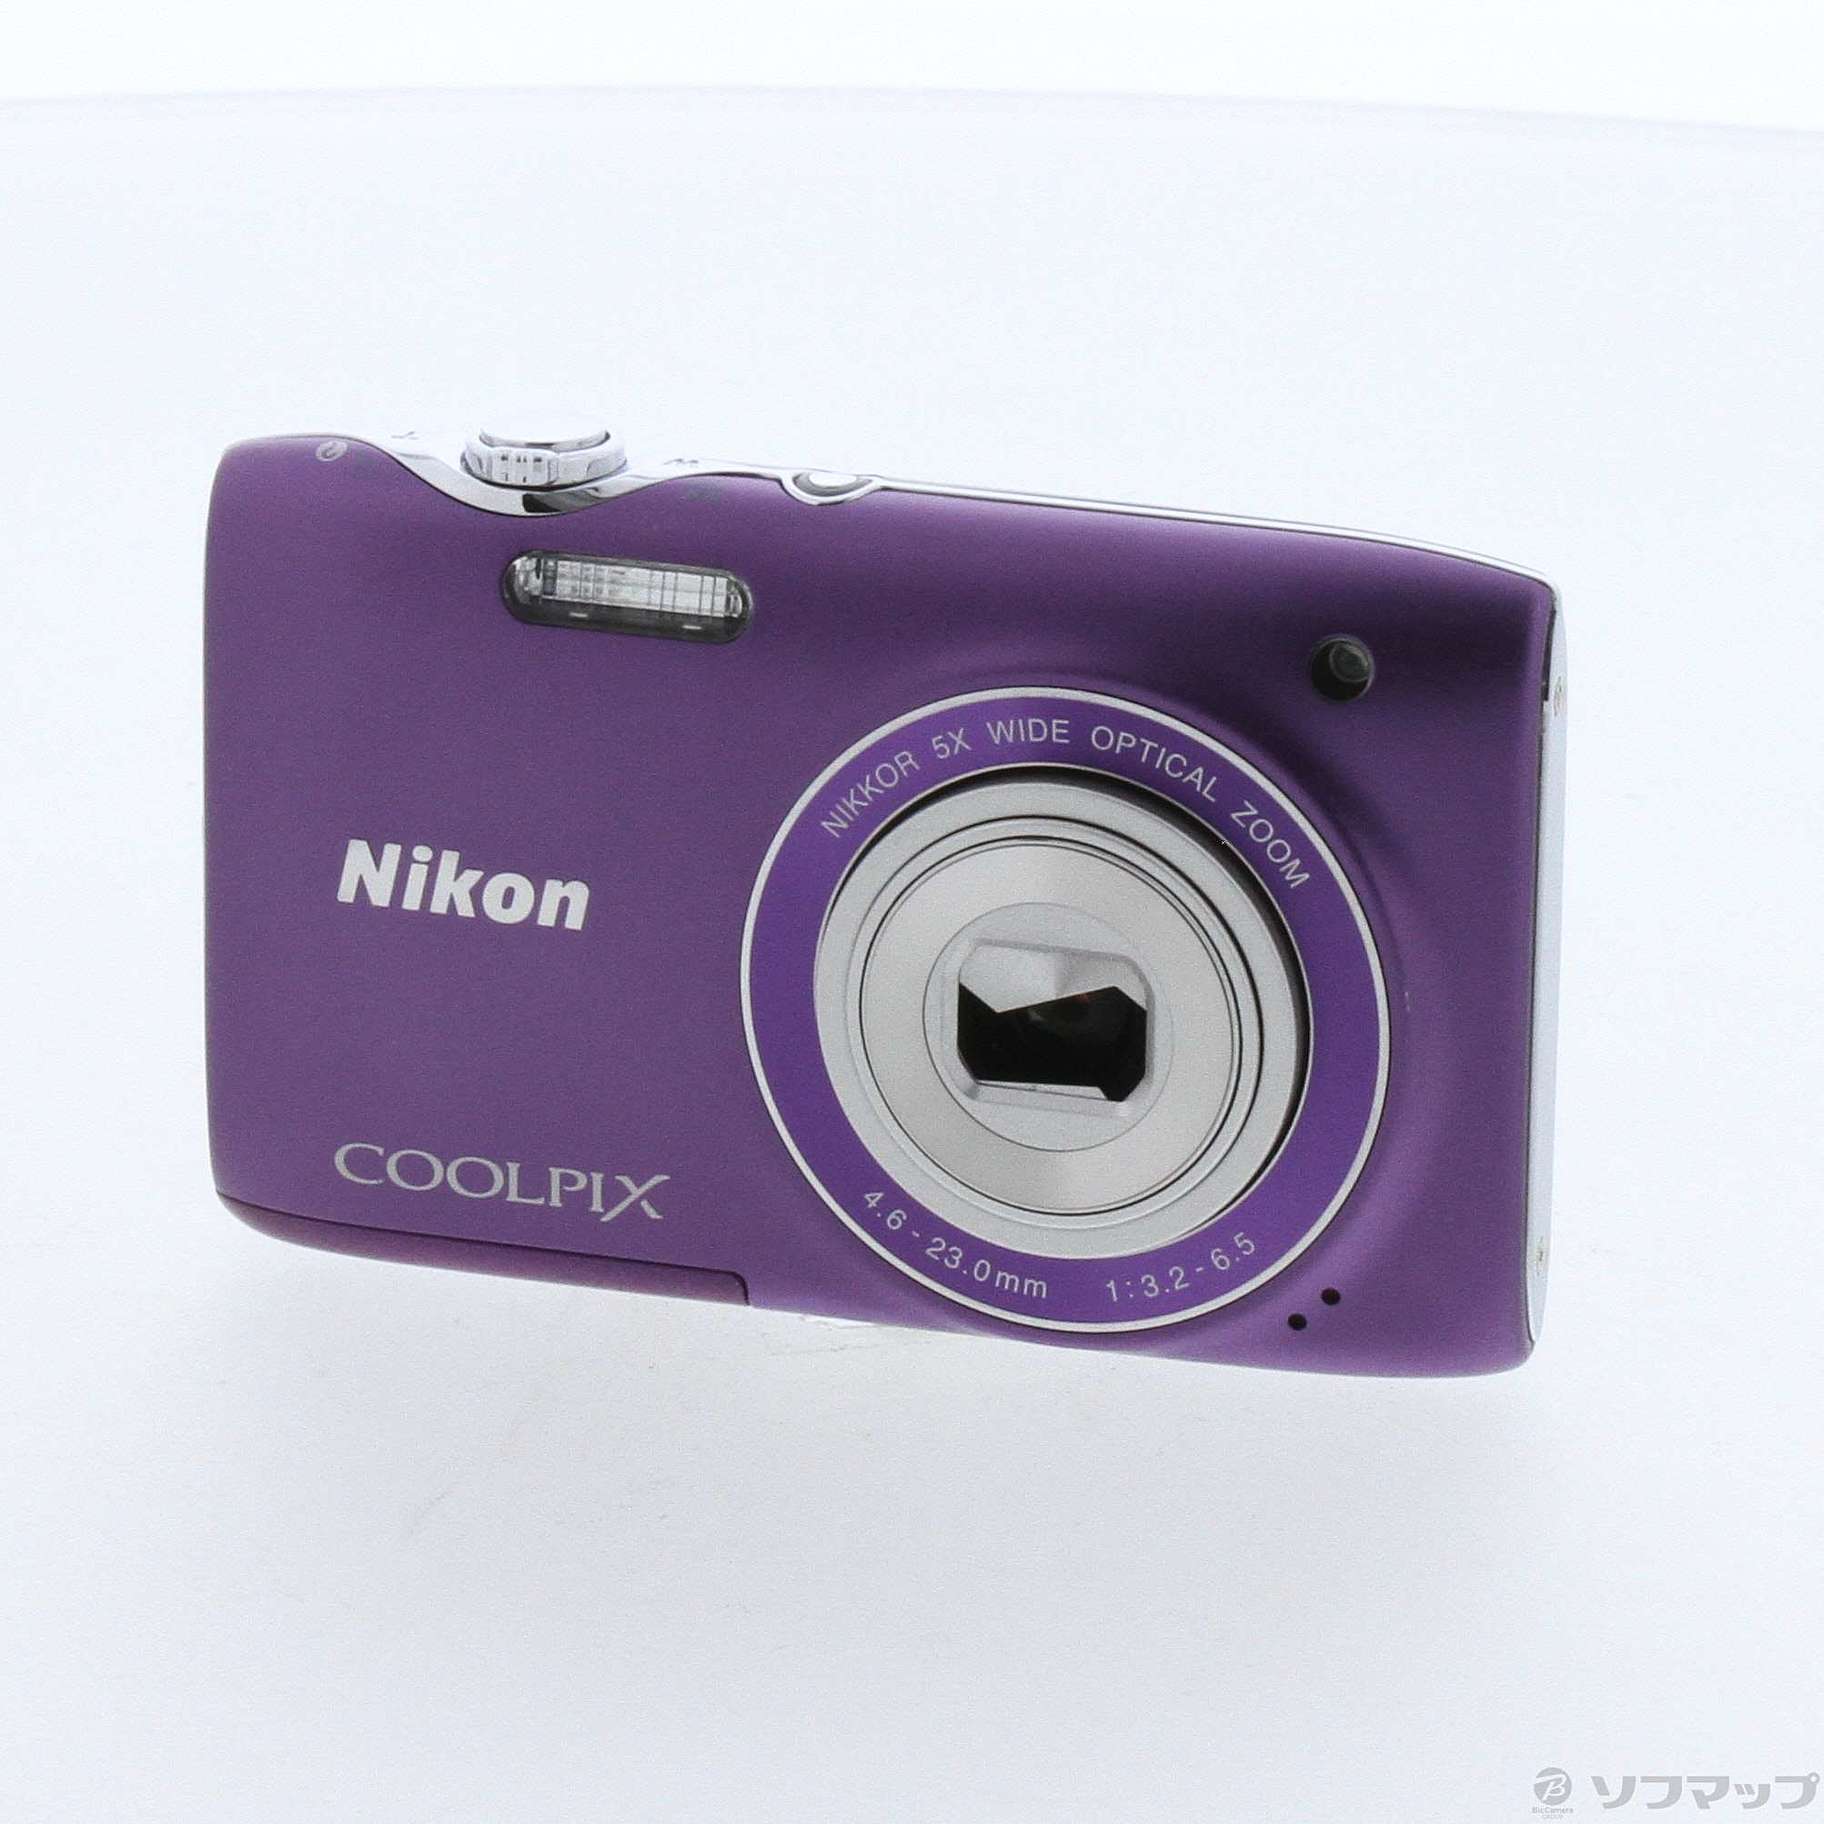 コンデジニコンクールピクス中古NikonデジタルカメラCOOLPIX S3100 ファインパープル